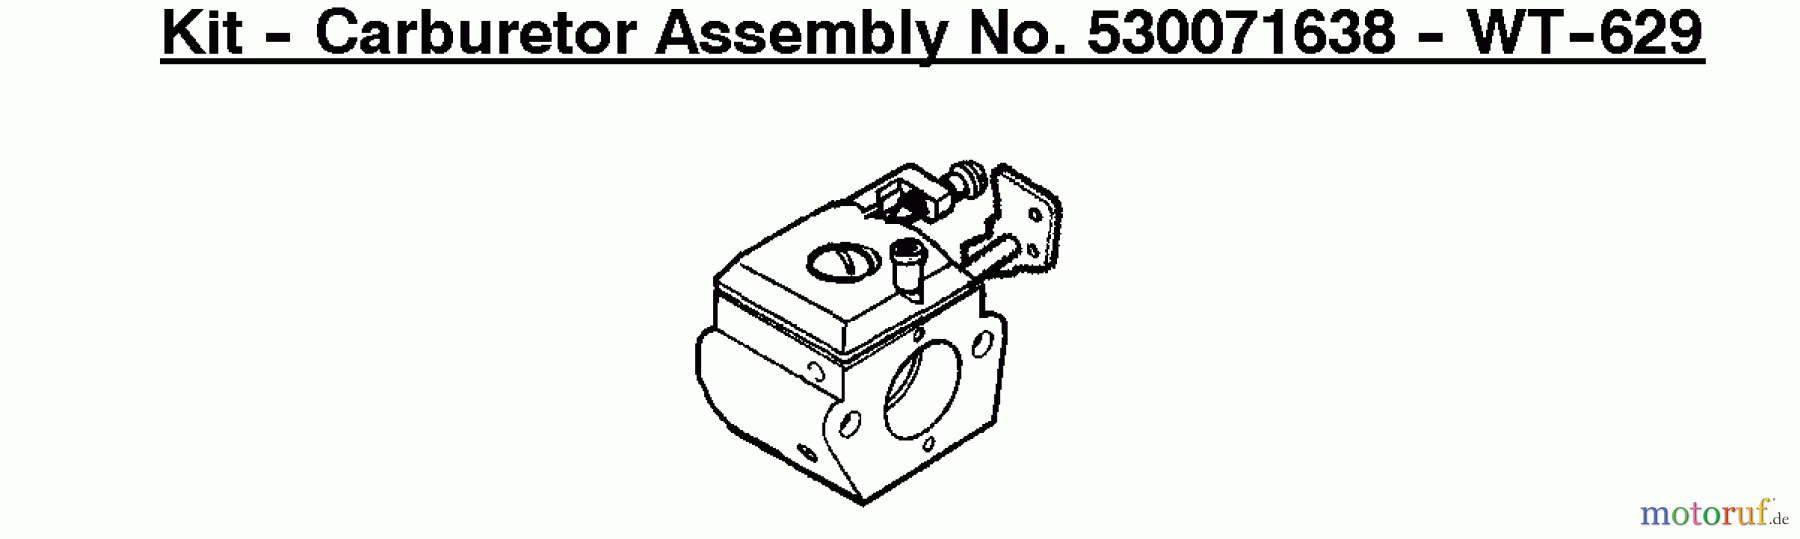  Poulan / Weed Eater Motorsensen, Trimmer WT3100 - Weed Eater String Trimmer Kit - Carburetor Assembly